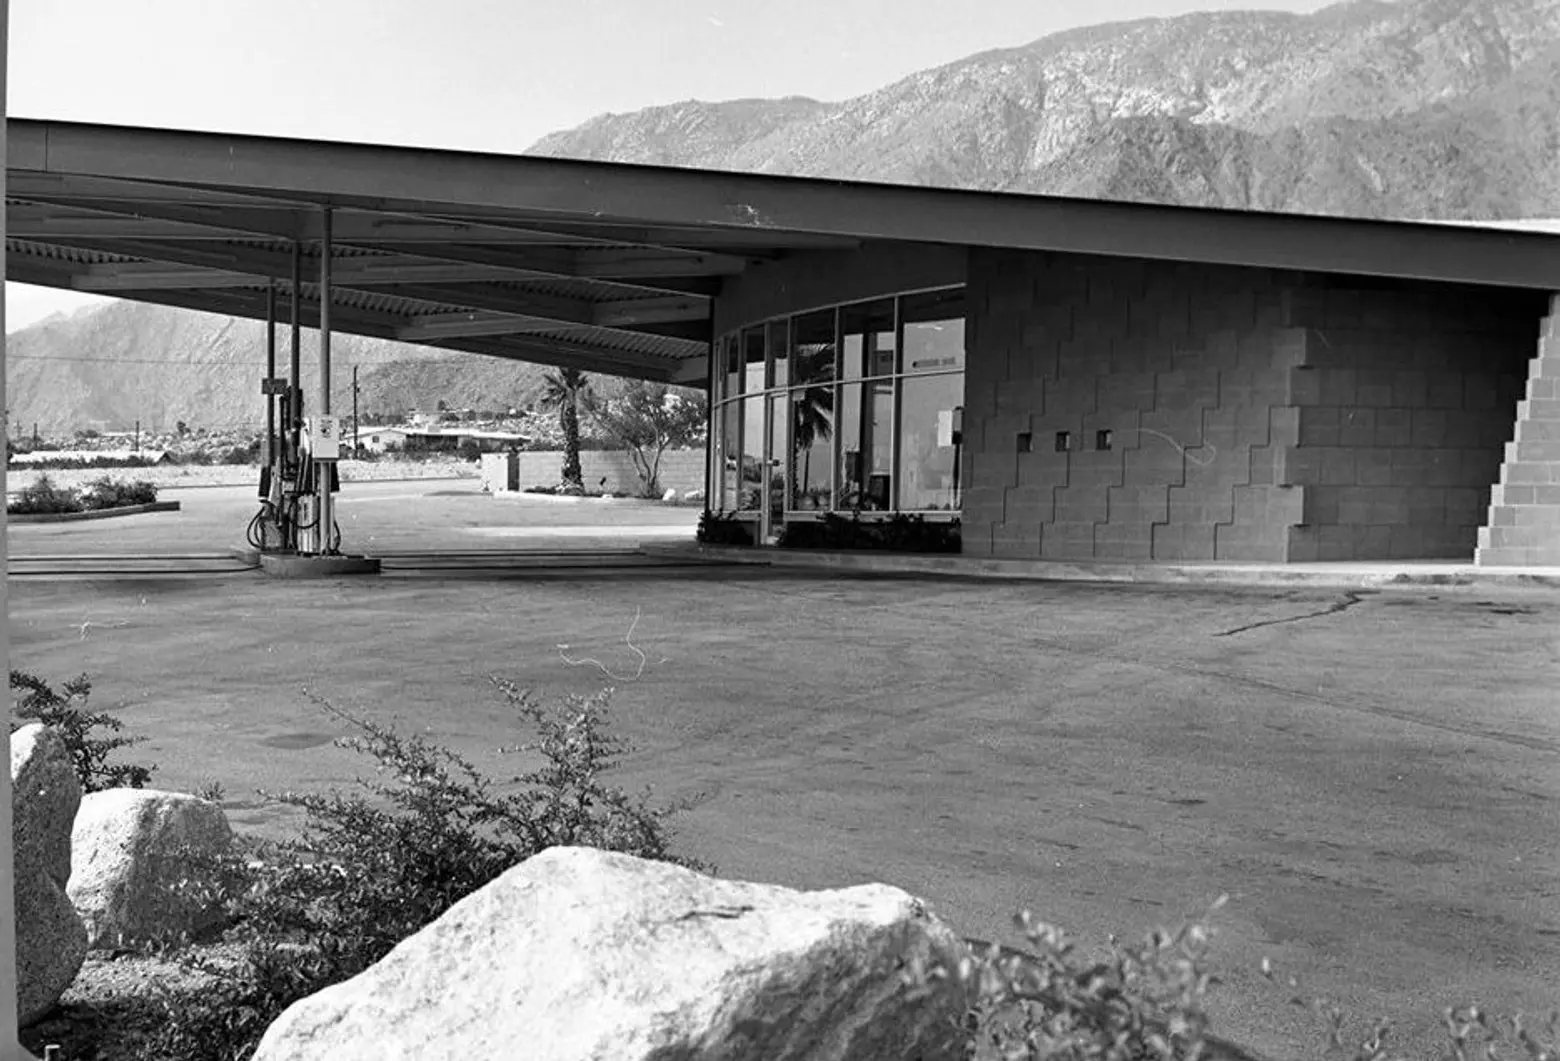 Frey Gas Station